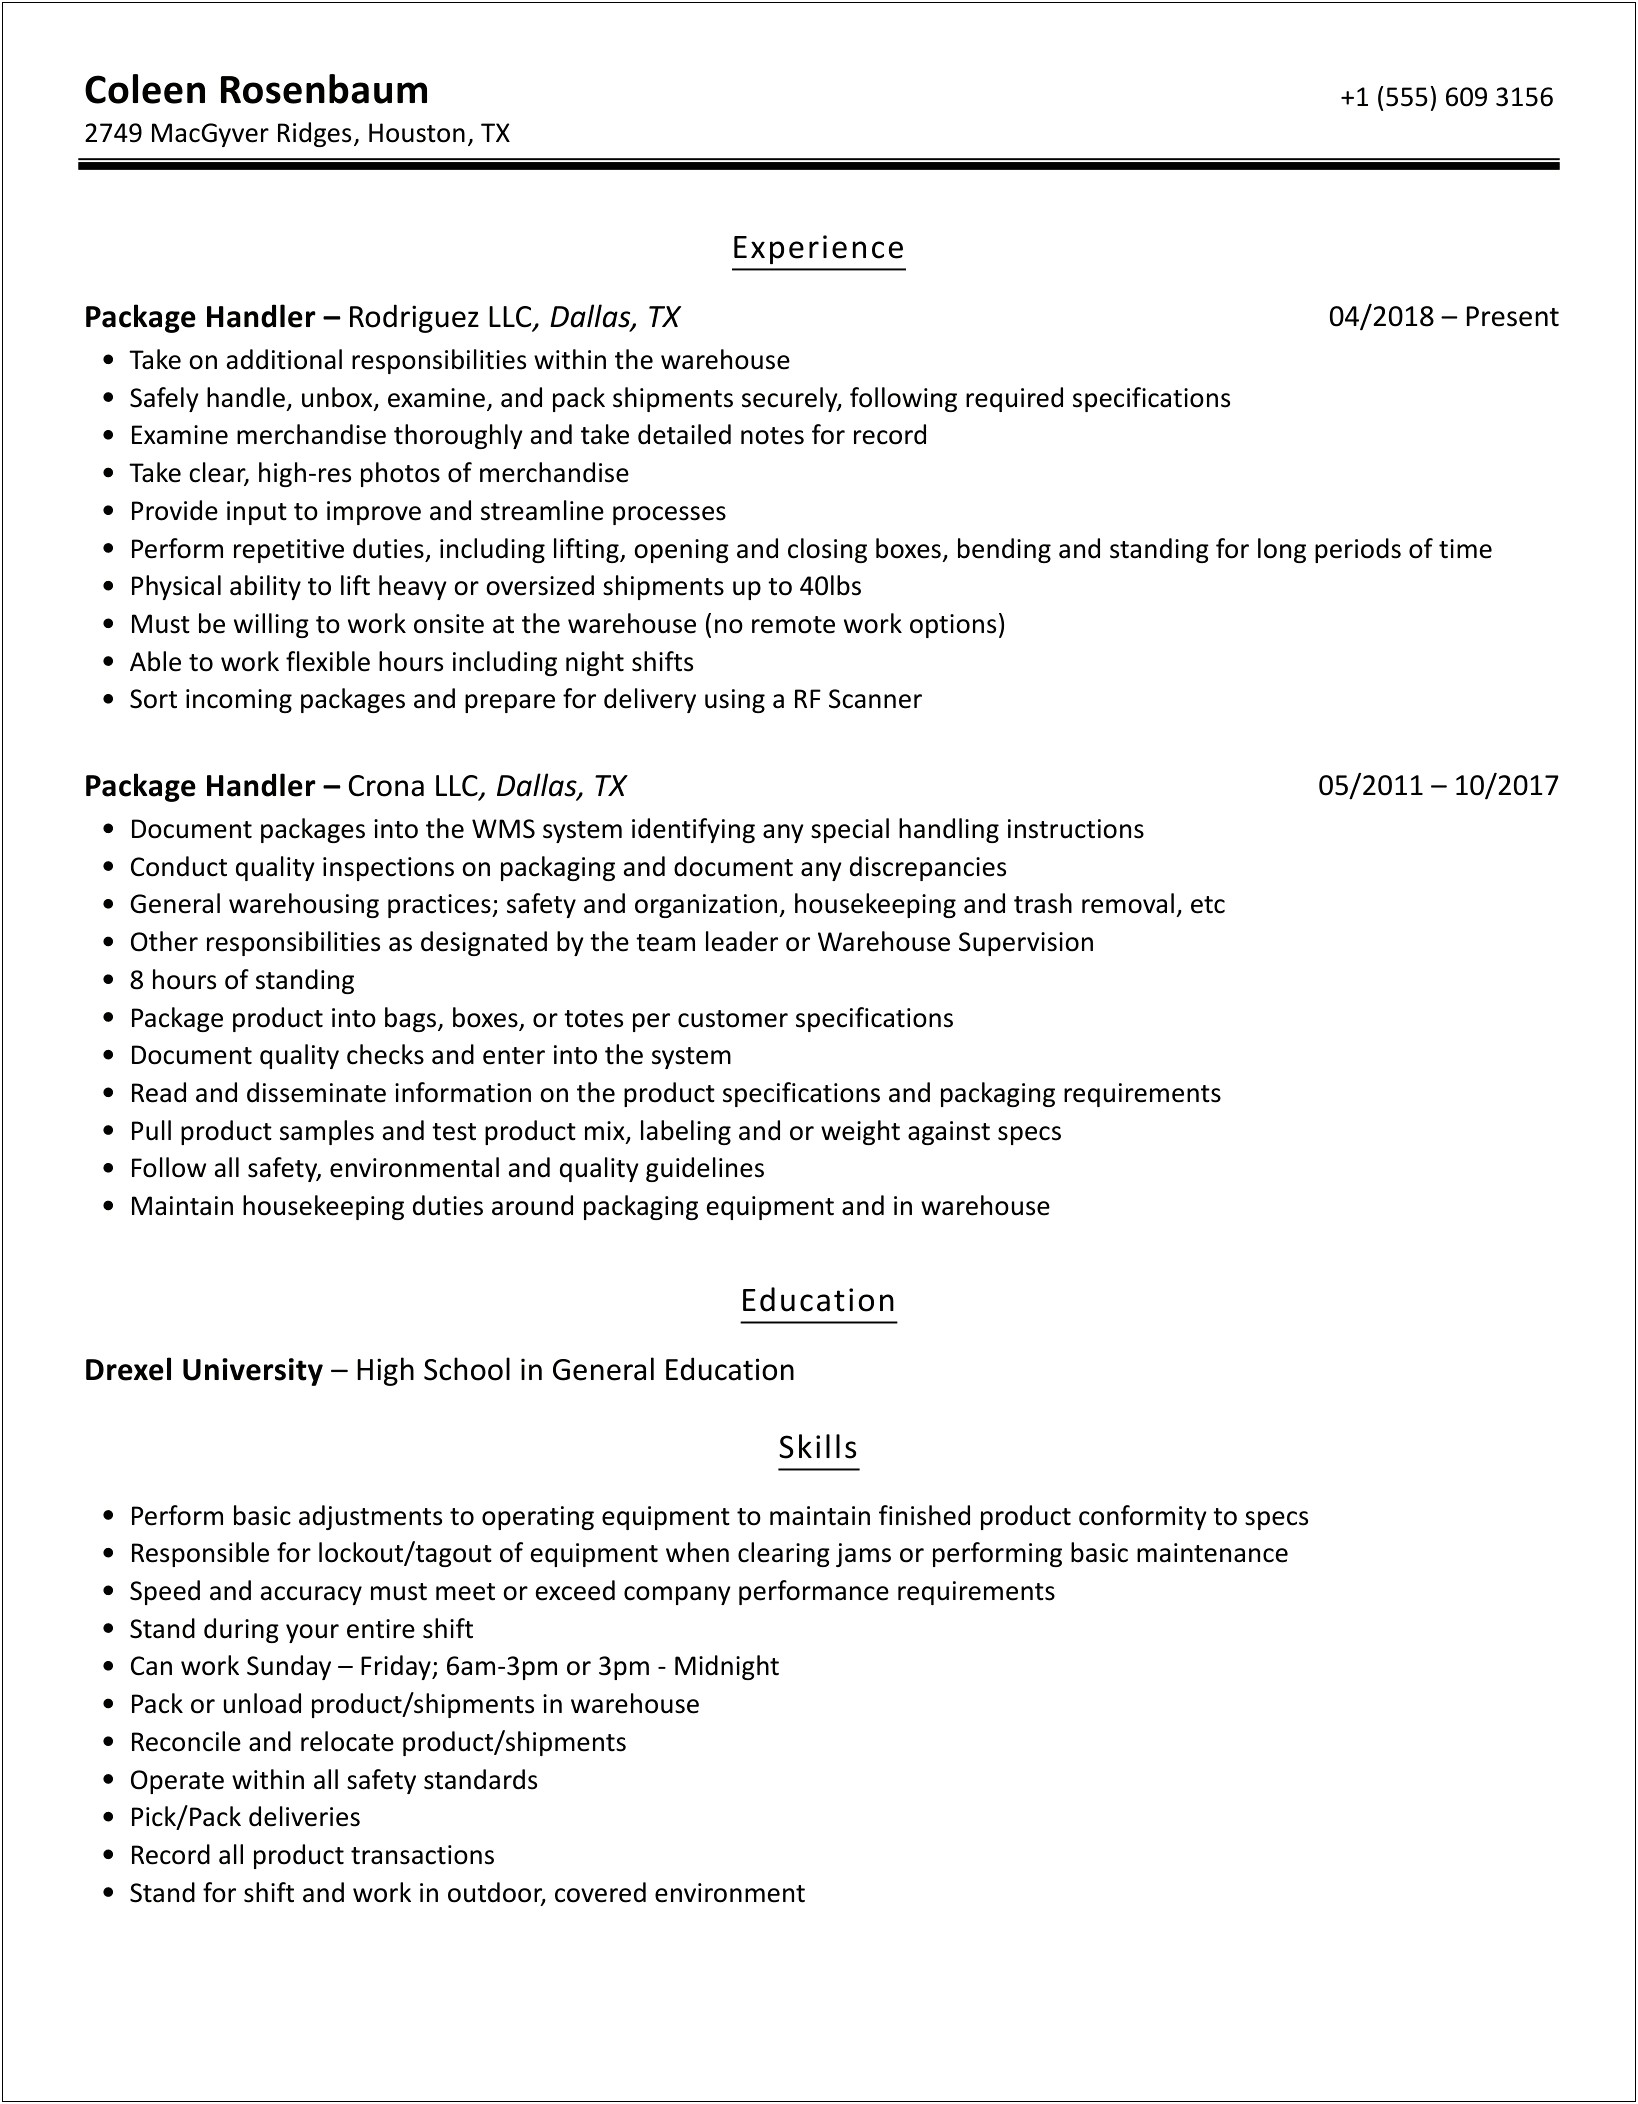 Ups Package Handler Job Description For Resume